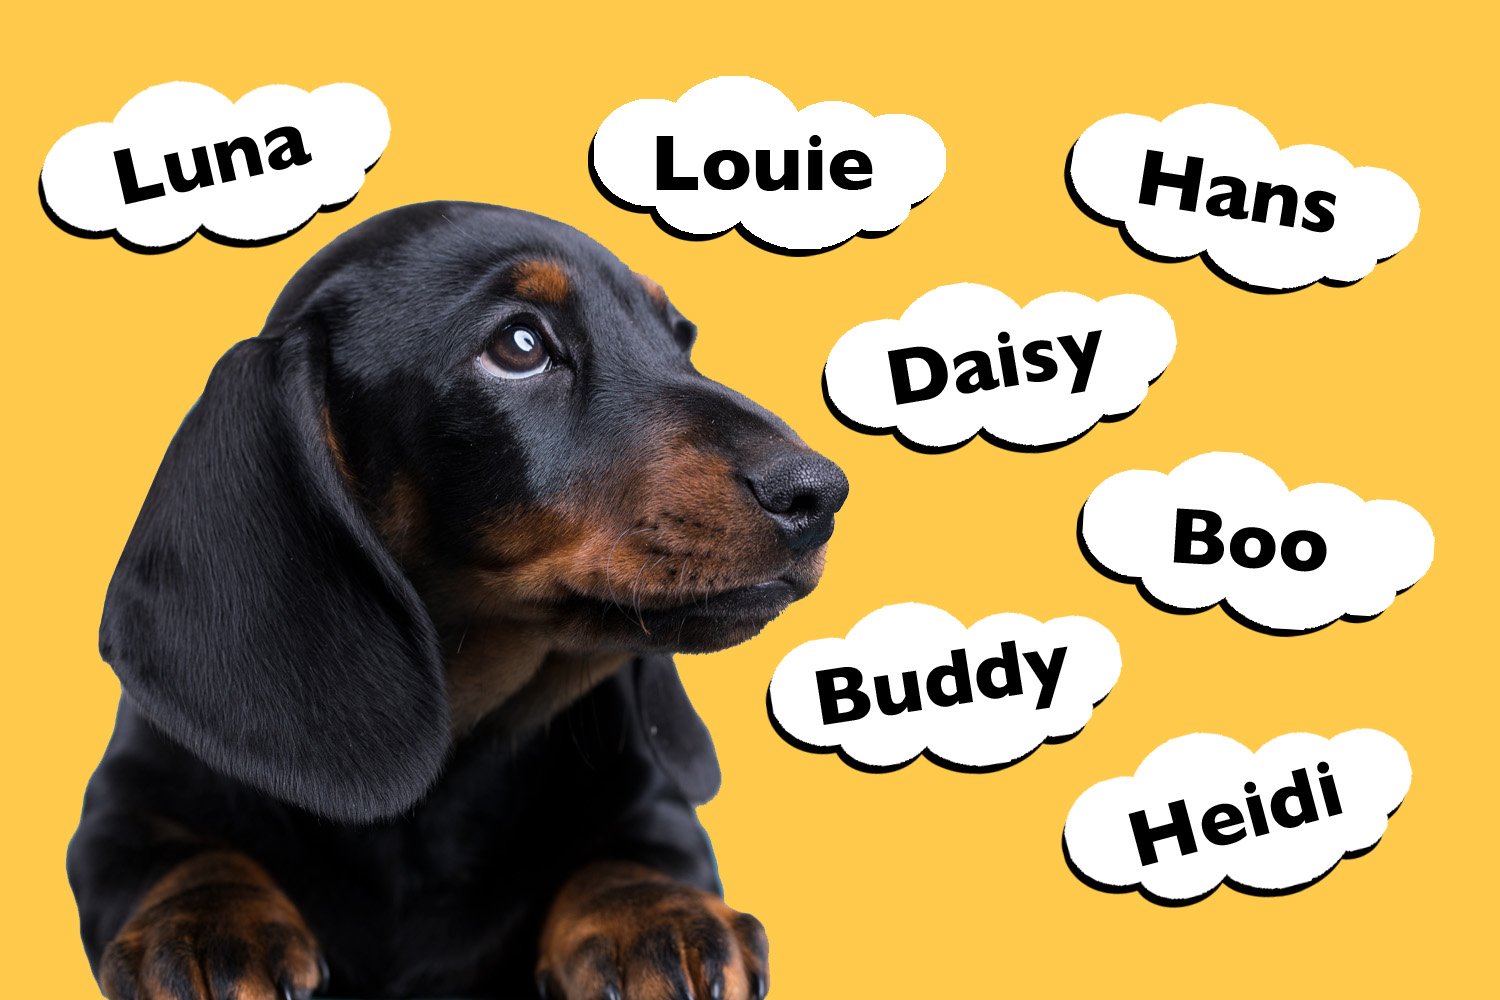 Dachshund Dog Names Male